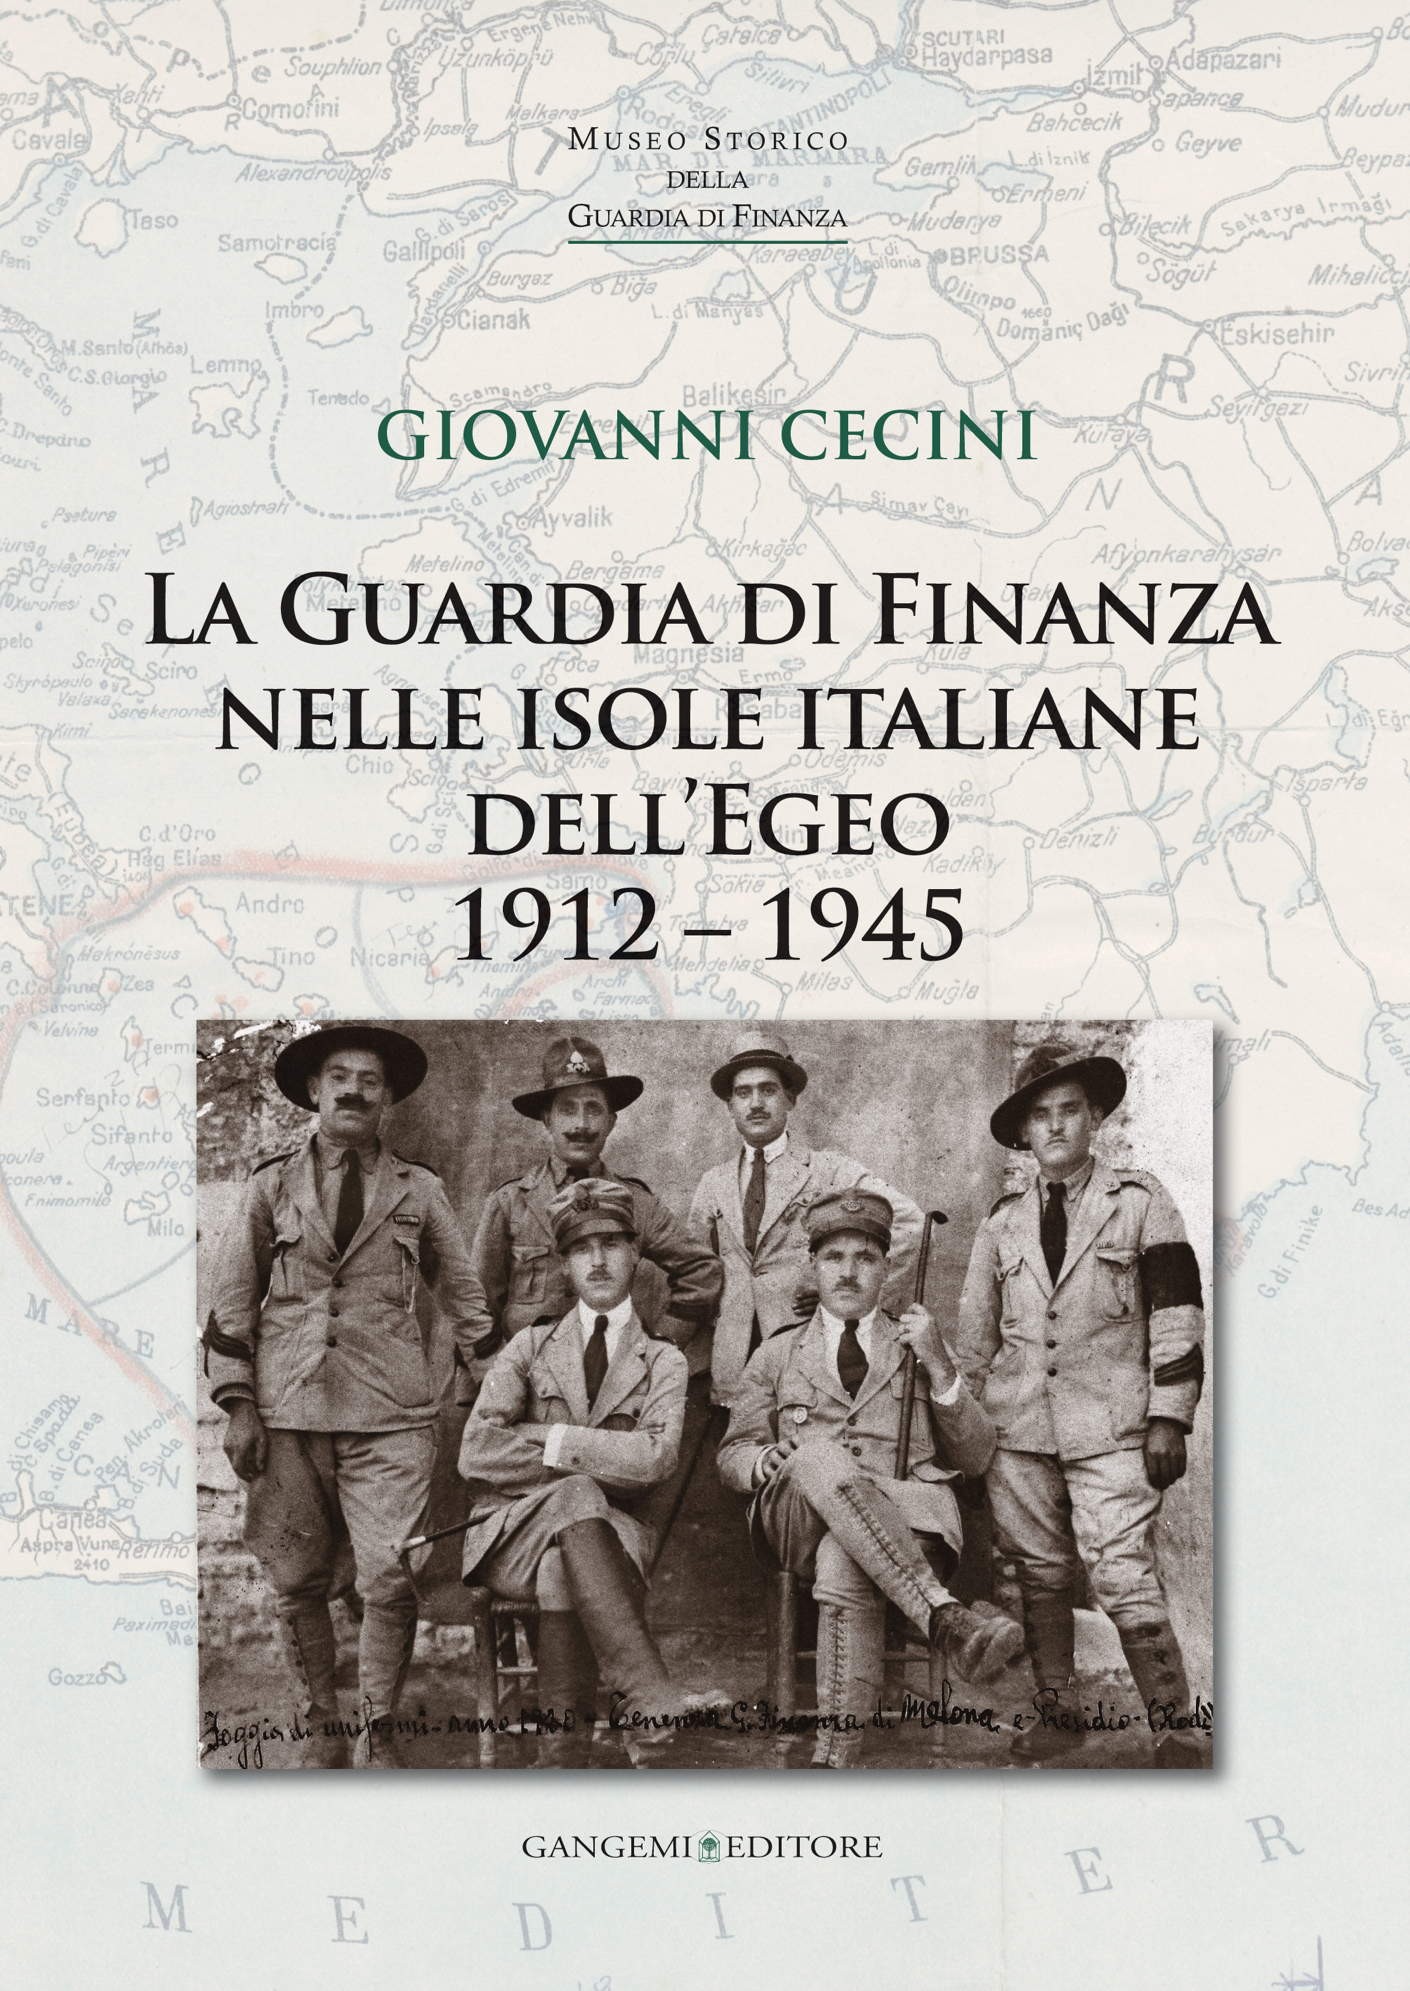 La Guardia di Finanza nelle isole italiane dell’Egeo 1912 – 1945 - Librerie.coop